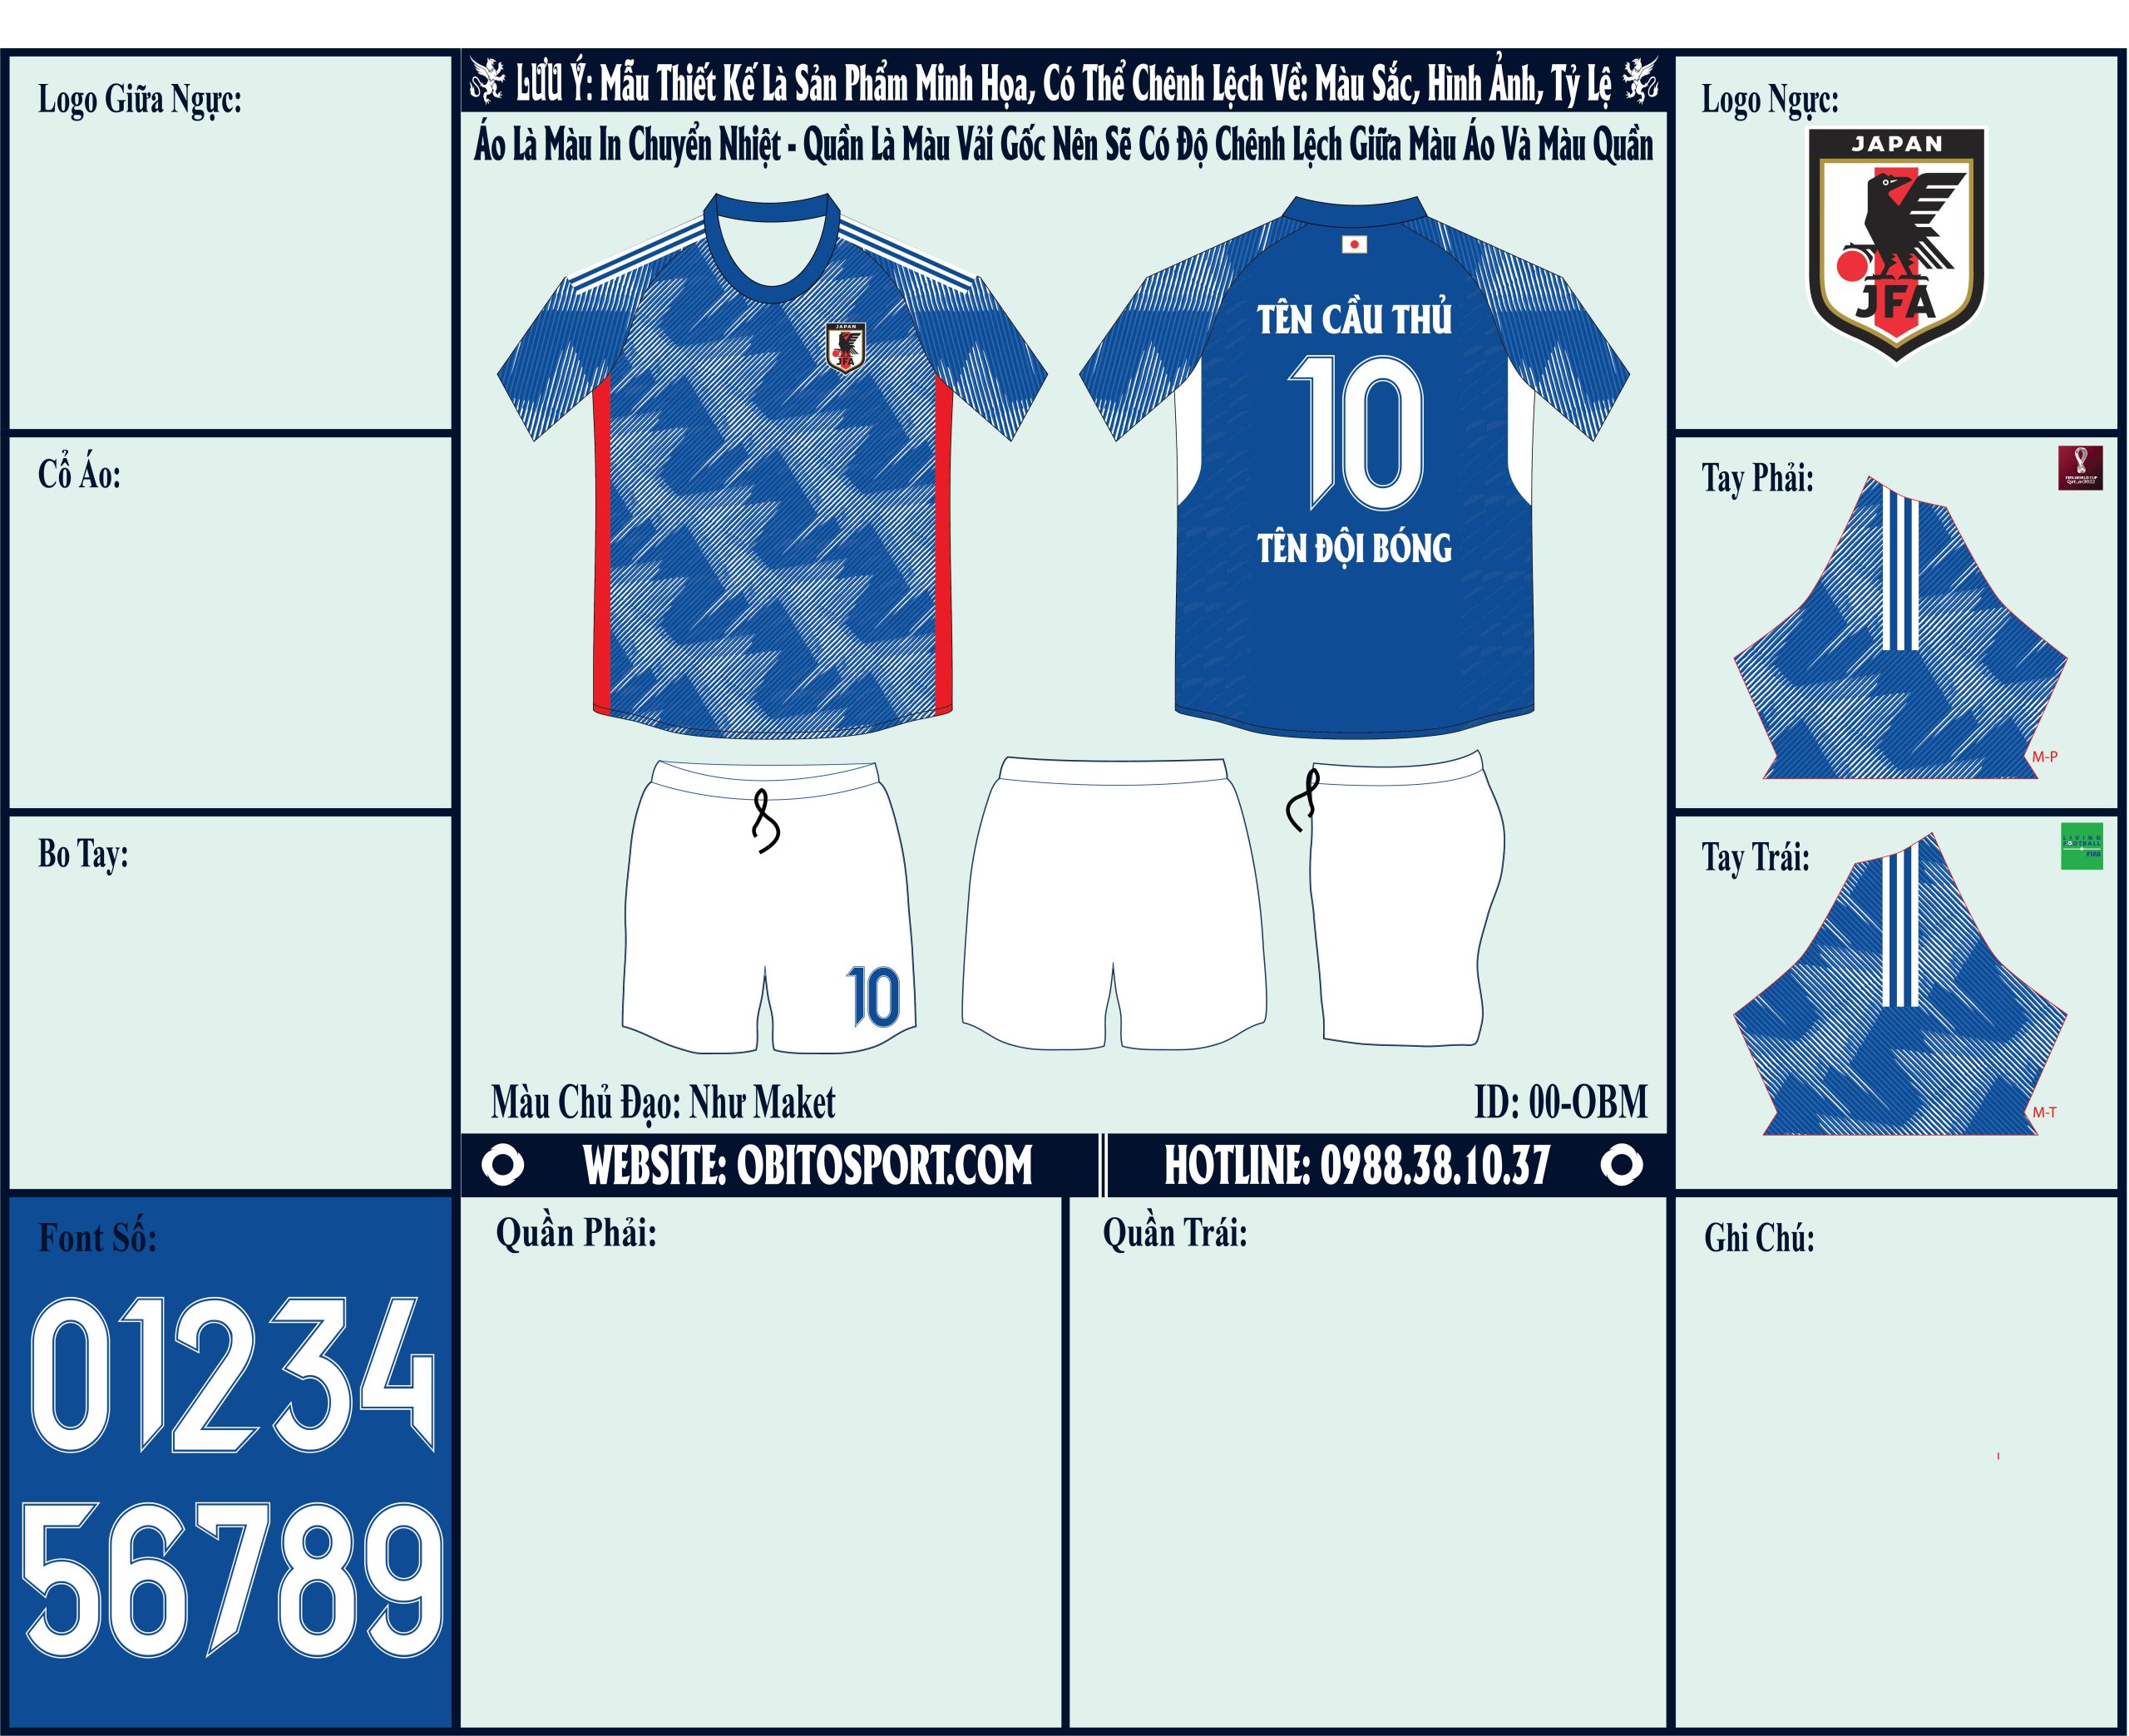 Mẫu ảnh áo đội tuyển Nhật Bản sân nhà World Cup 2022 Market - Thành phẩm là một trong những mẫu áo được săn tìm nhiều nhất hiện nay trên thị trường. Và được các nhân viên Shop Obito Sport thiết kế tận tình, dồn hết nhiệt huyết vào mẫu áo đấu này.